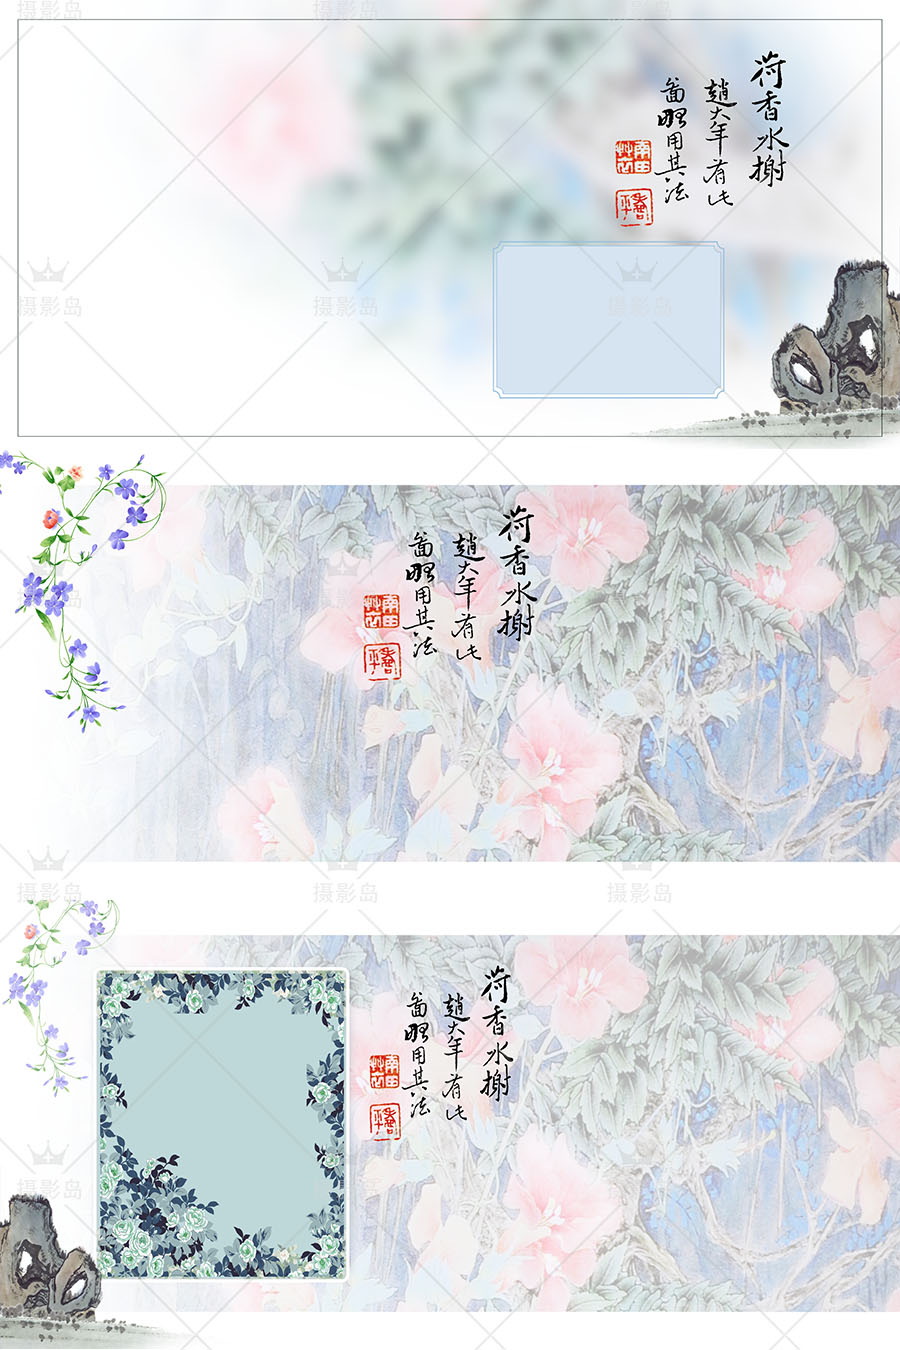 中国风古装写真艺术PSD相册模板，影楼盘子坊、秀禾、国潮照片后期相册素材